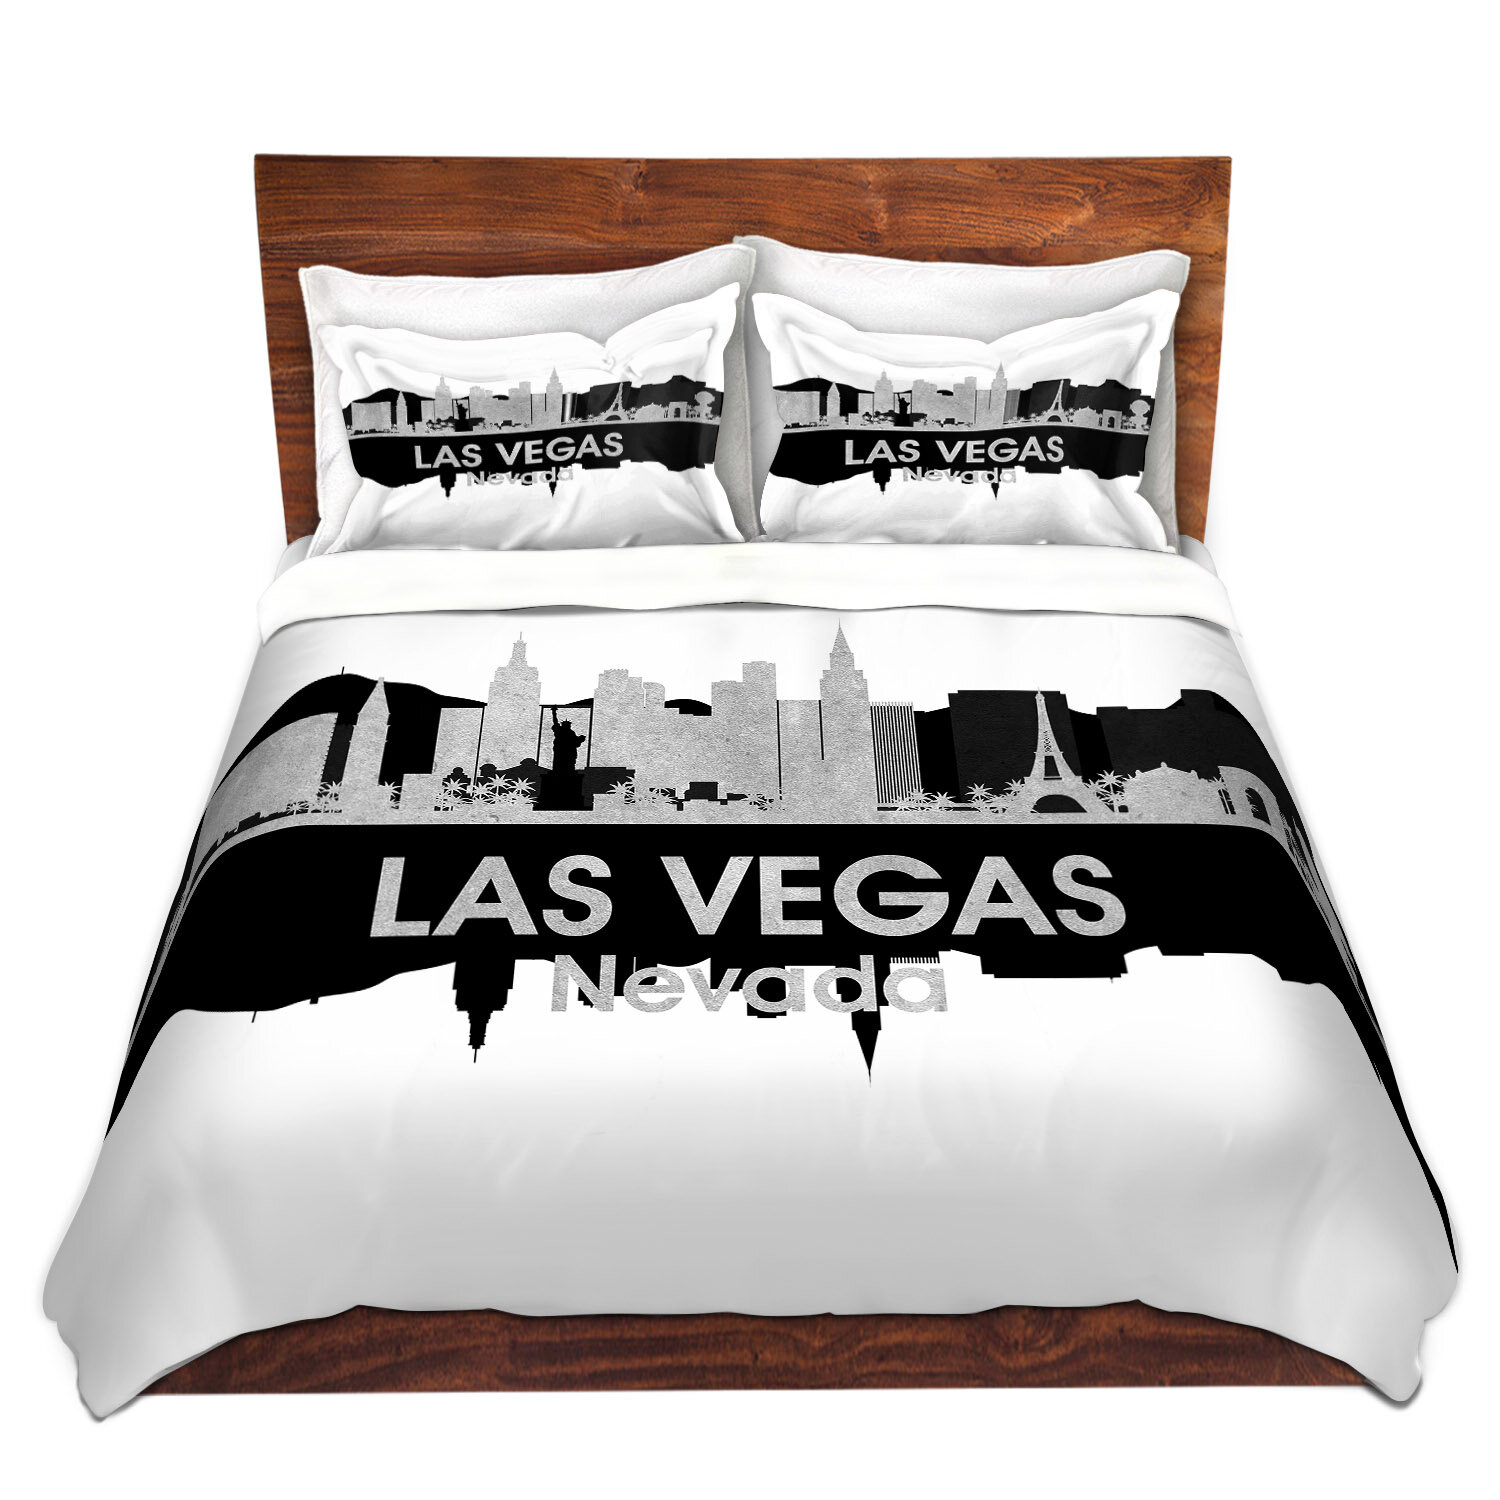 Bless international City IV Las Vegas Nevada Duvet Cover Set